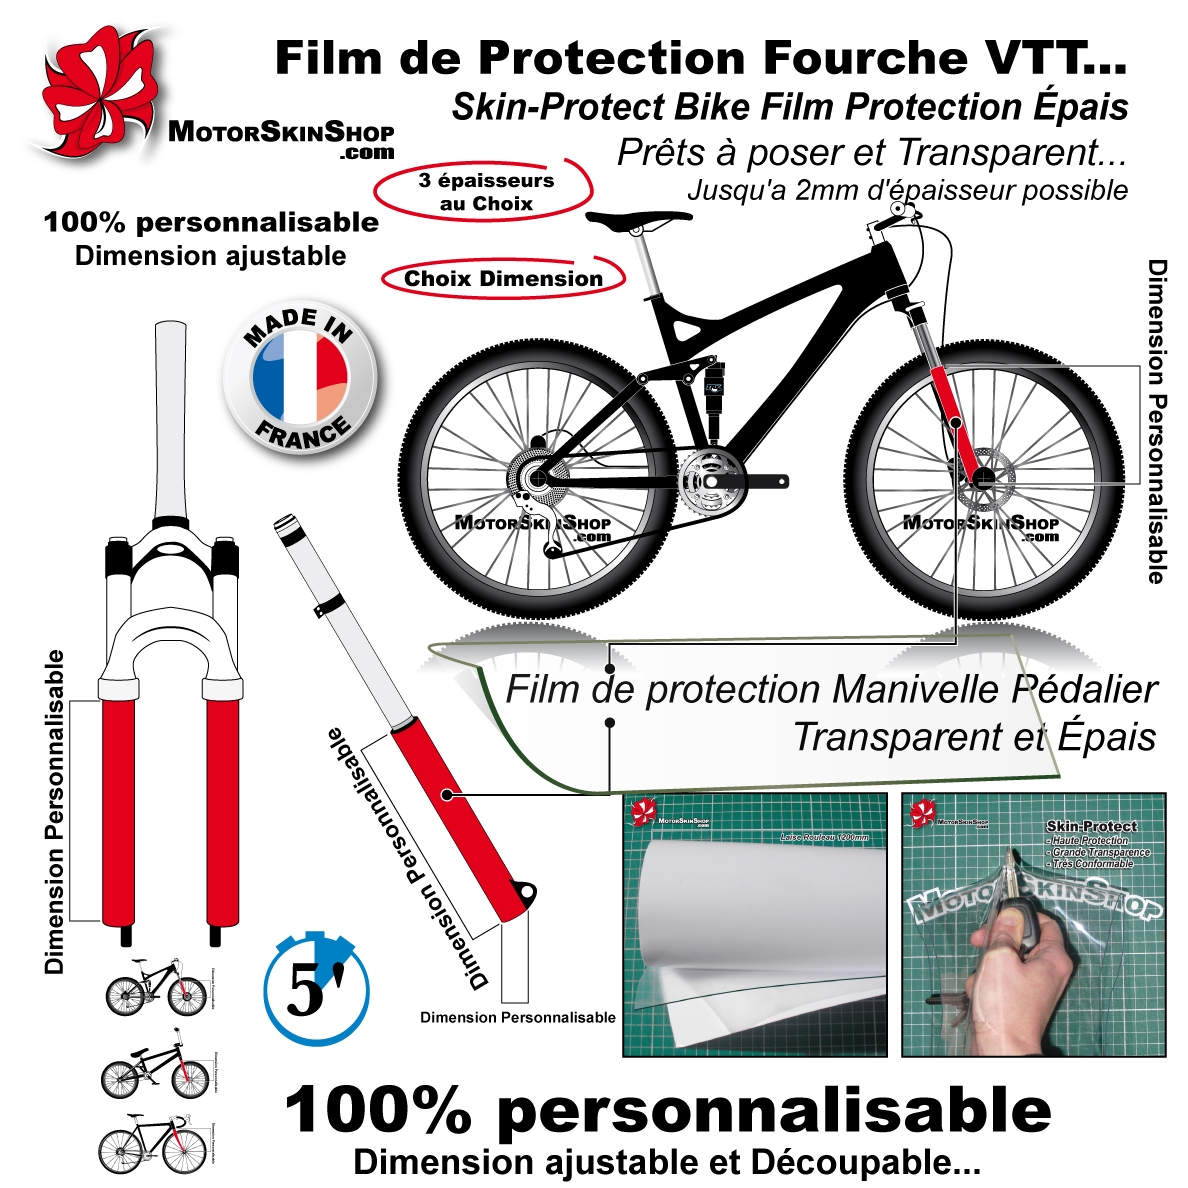 Kit Film Protection VTT sur mesure personnalisé a vos dimensions et  épaisseur